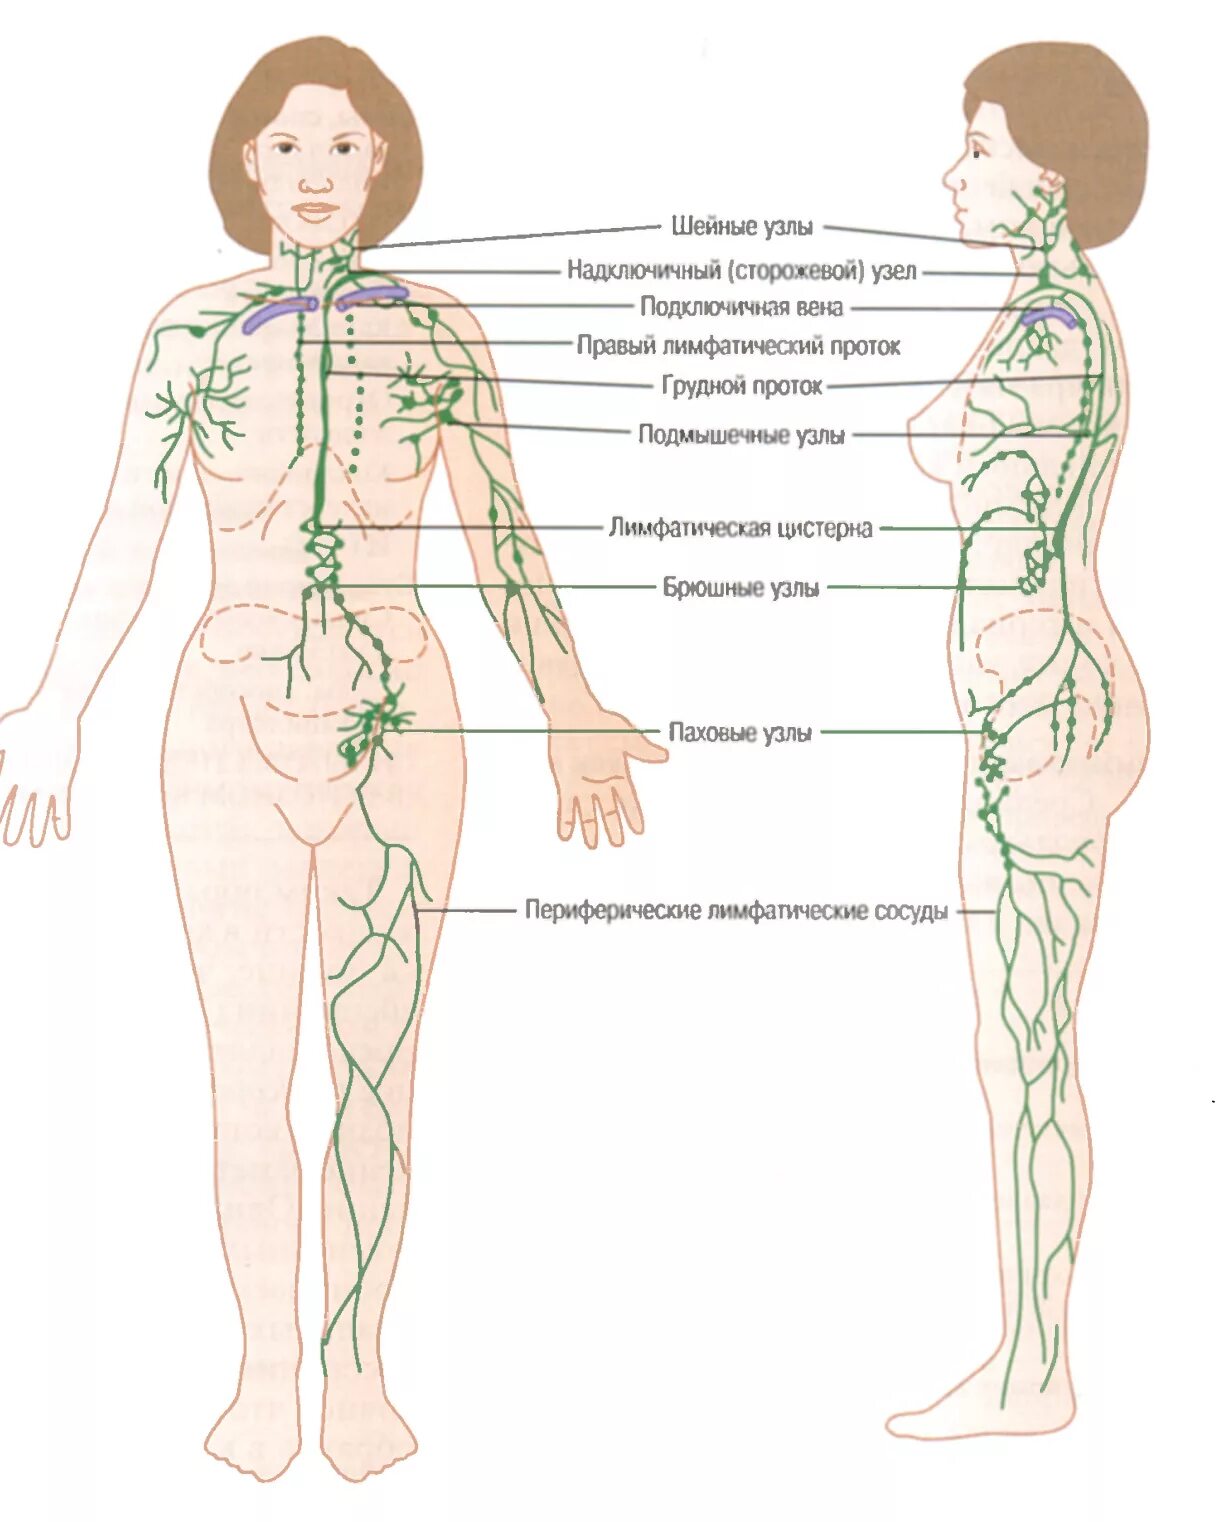 Количество лимфатических узлов. Где находятся лимфатические узлы. Лимфатические узлы схема расположения. Лимфоузлы на теле человека схема. Где находятся лимфоузлы на теле человека расположение схема.